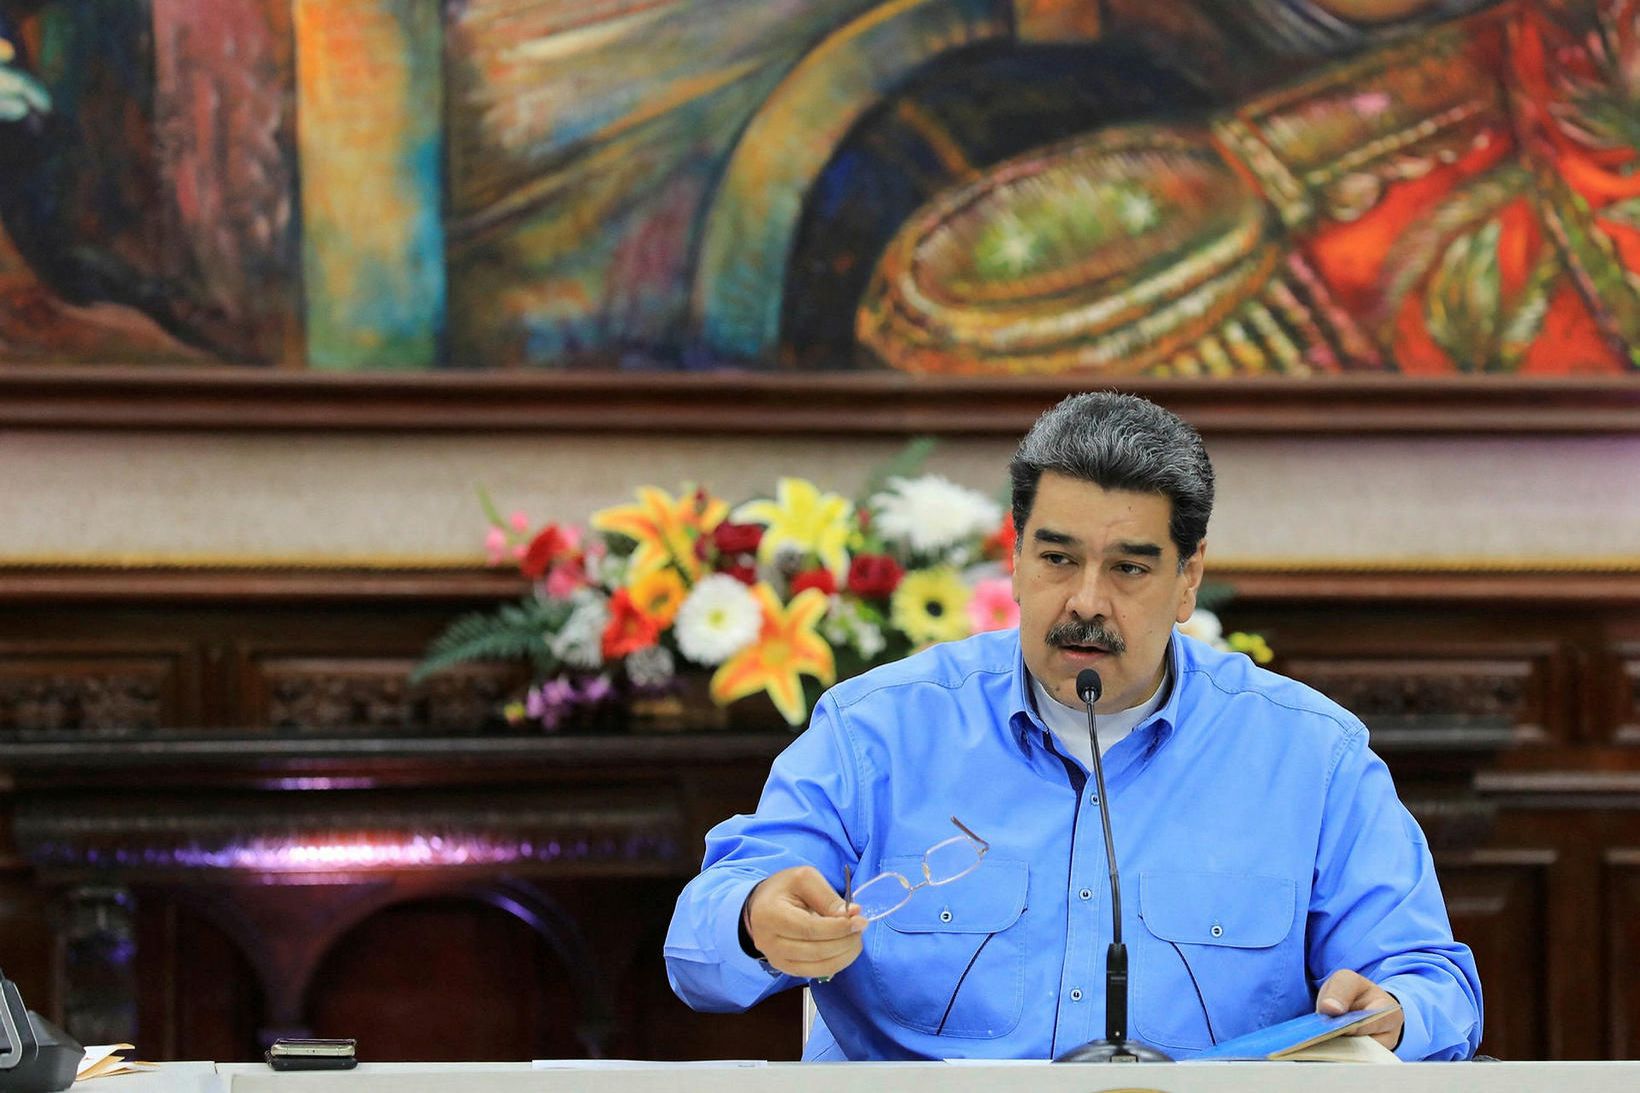 Maduro tók við sem forseti landsins árið 2013.